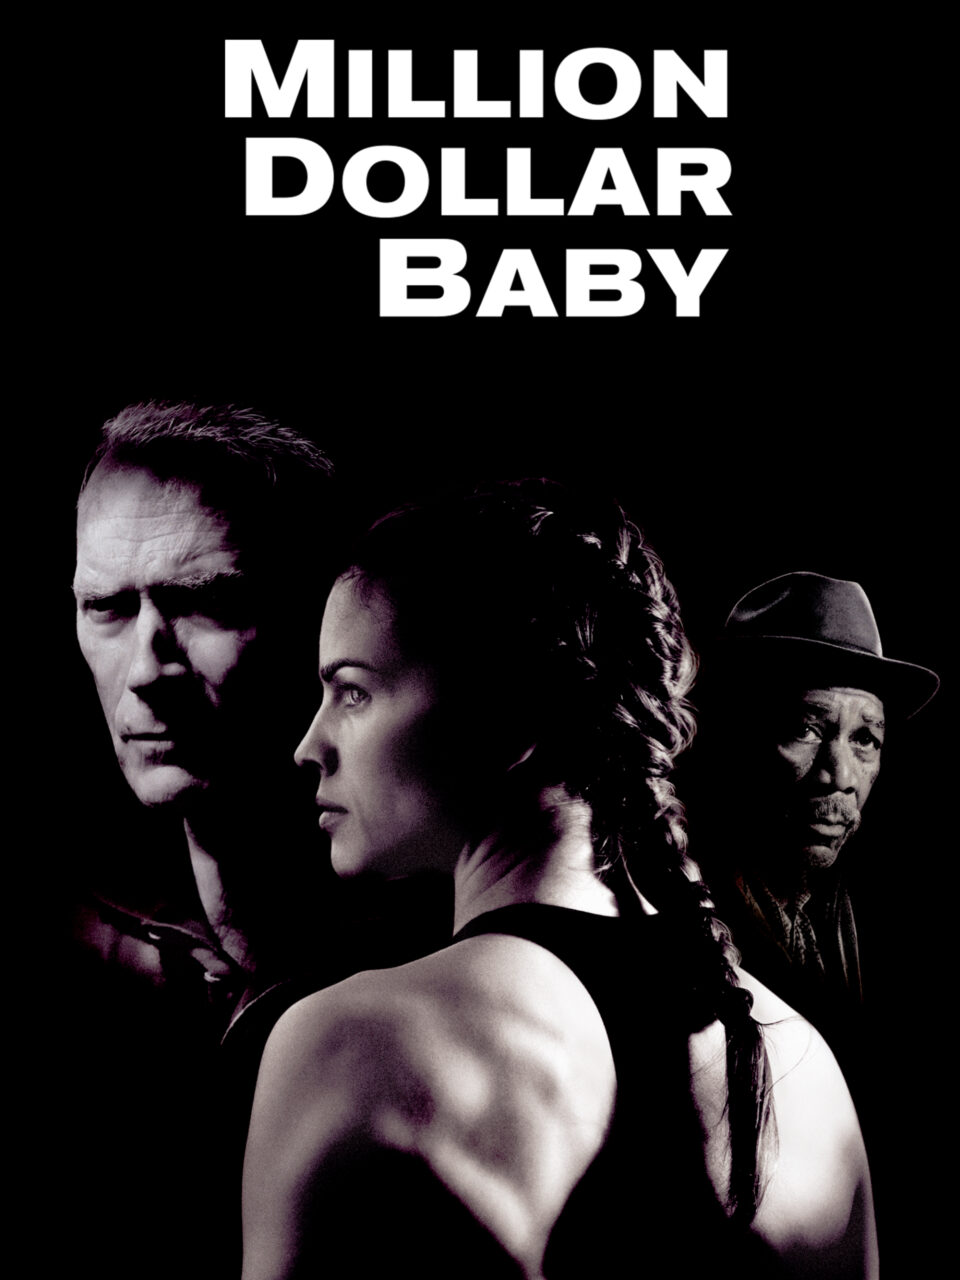 Film Tv 23 ottobre. Million Dollar Baby: il capolavoro di Clint Eastwood
La recensione del film su VigilanzaTv